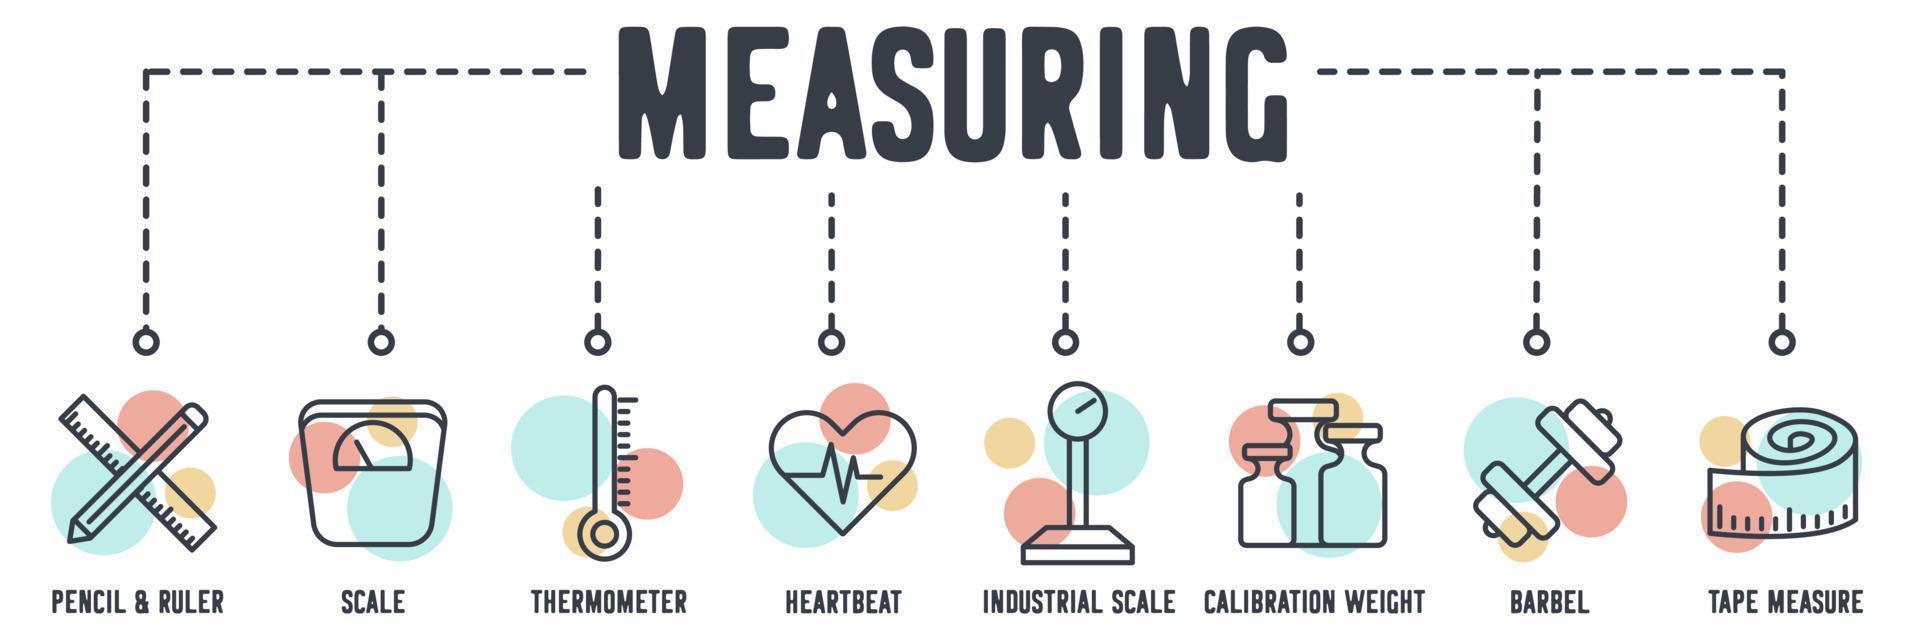 icono de web de banner de medición. lápiz y regla, escala, termómetro, latido del corazón, escala industrial, peso de calibración, barbo, cinta métrica concepto de ilustración vectorial. vector